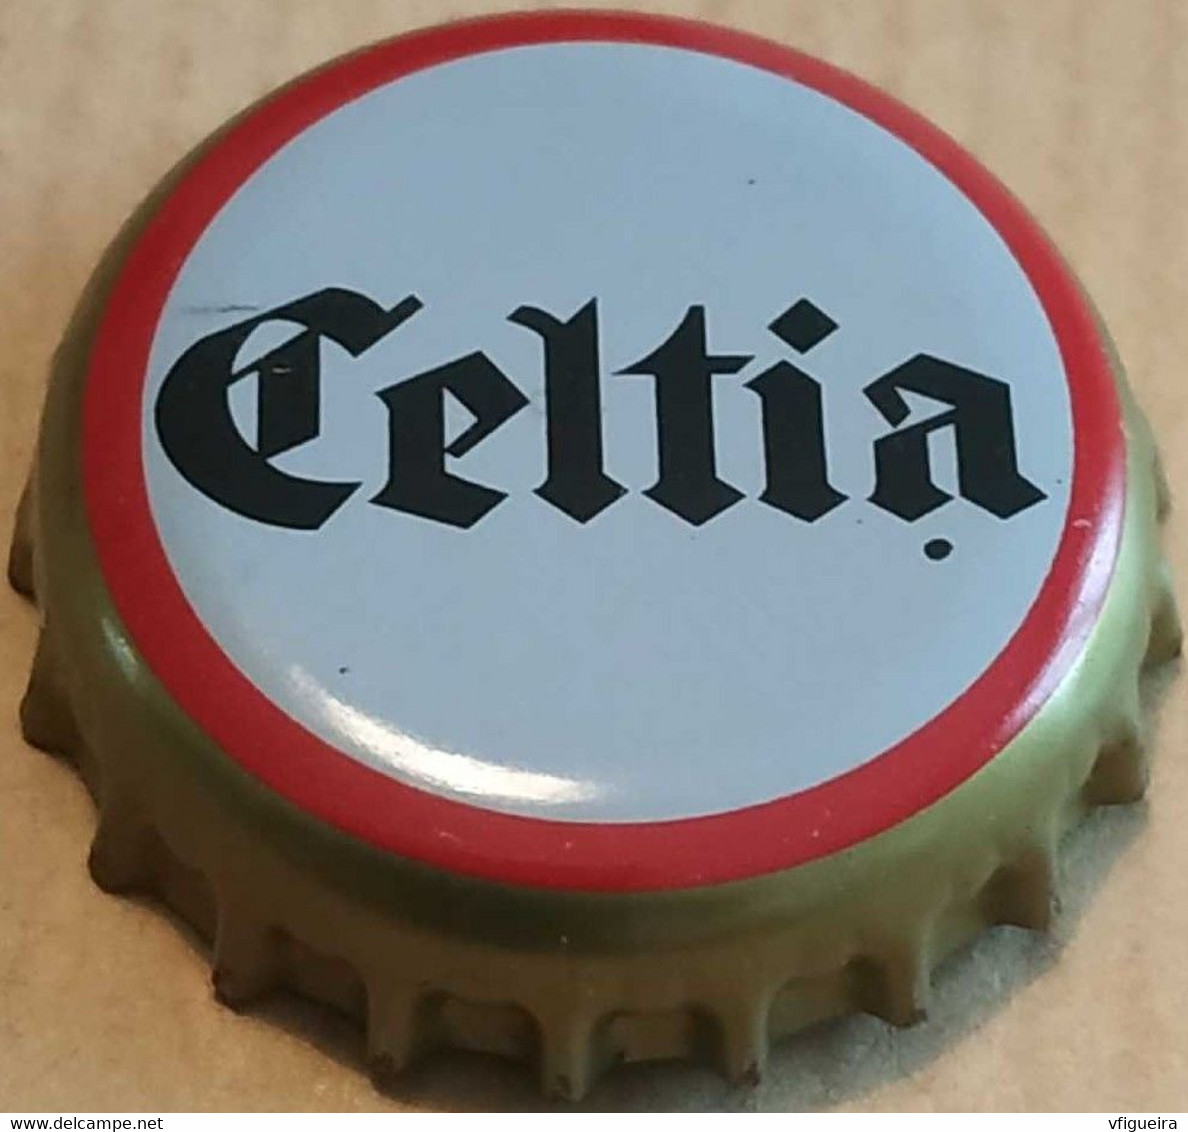 Tunisie Capsule Bière Beer Crown Cap Celtia - Bière